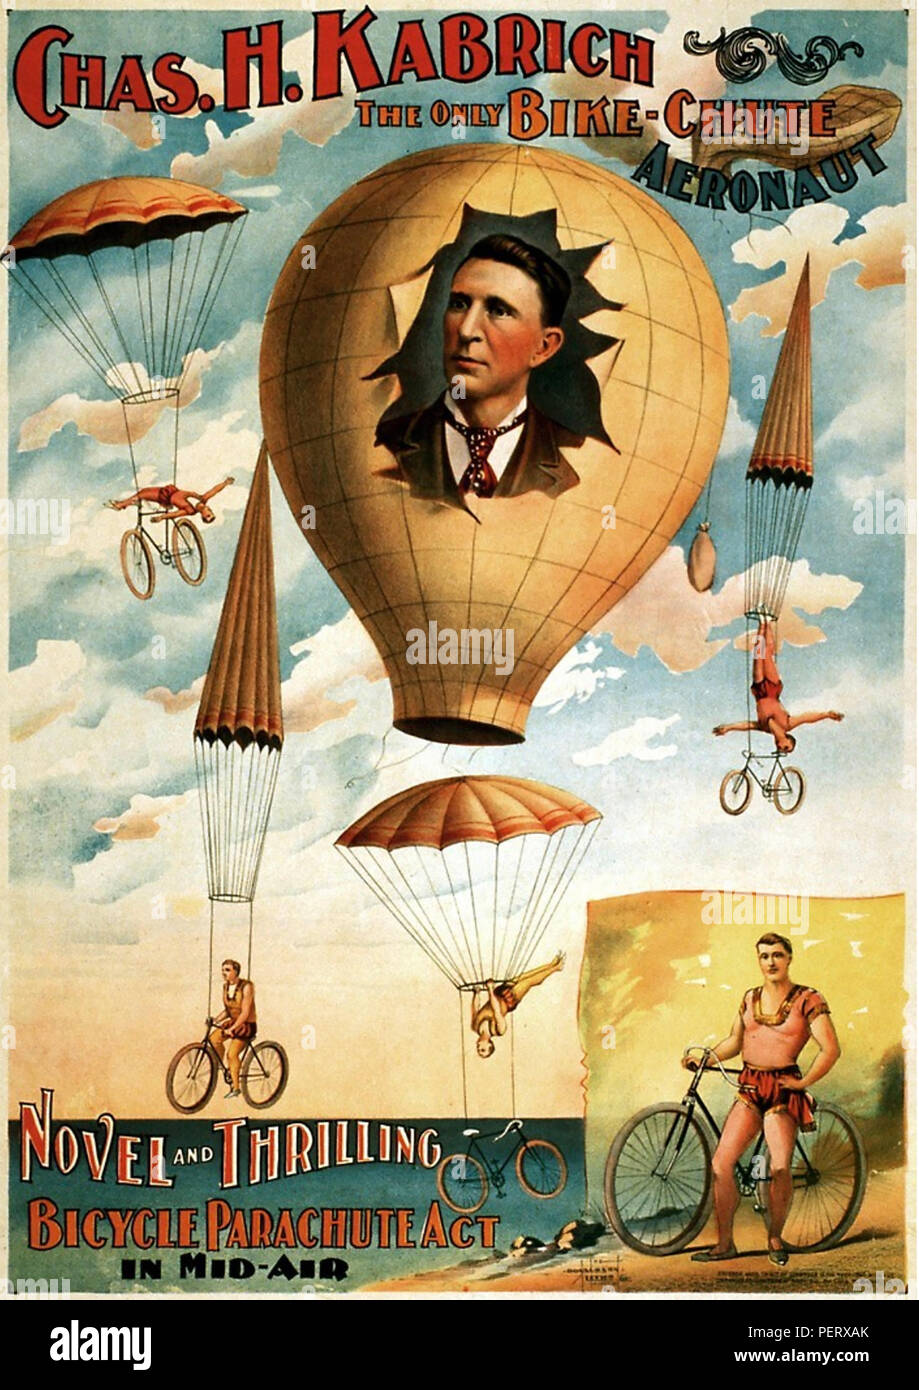 CHARLES KABRICH un americano 1896 poster per un stunt bike rider e parachutist. Nessuna informazione trovata. Foto Stock